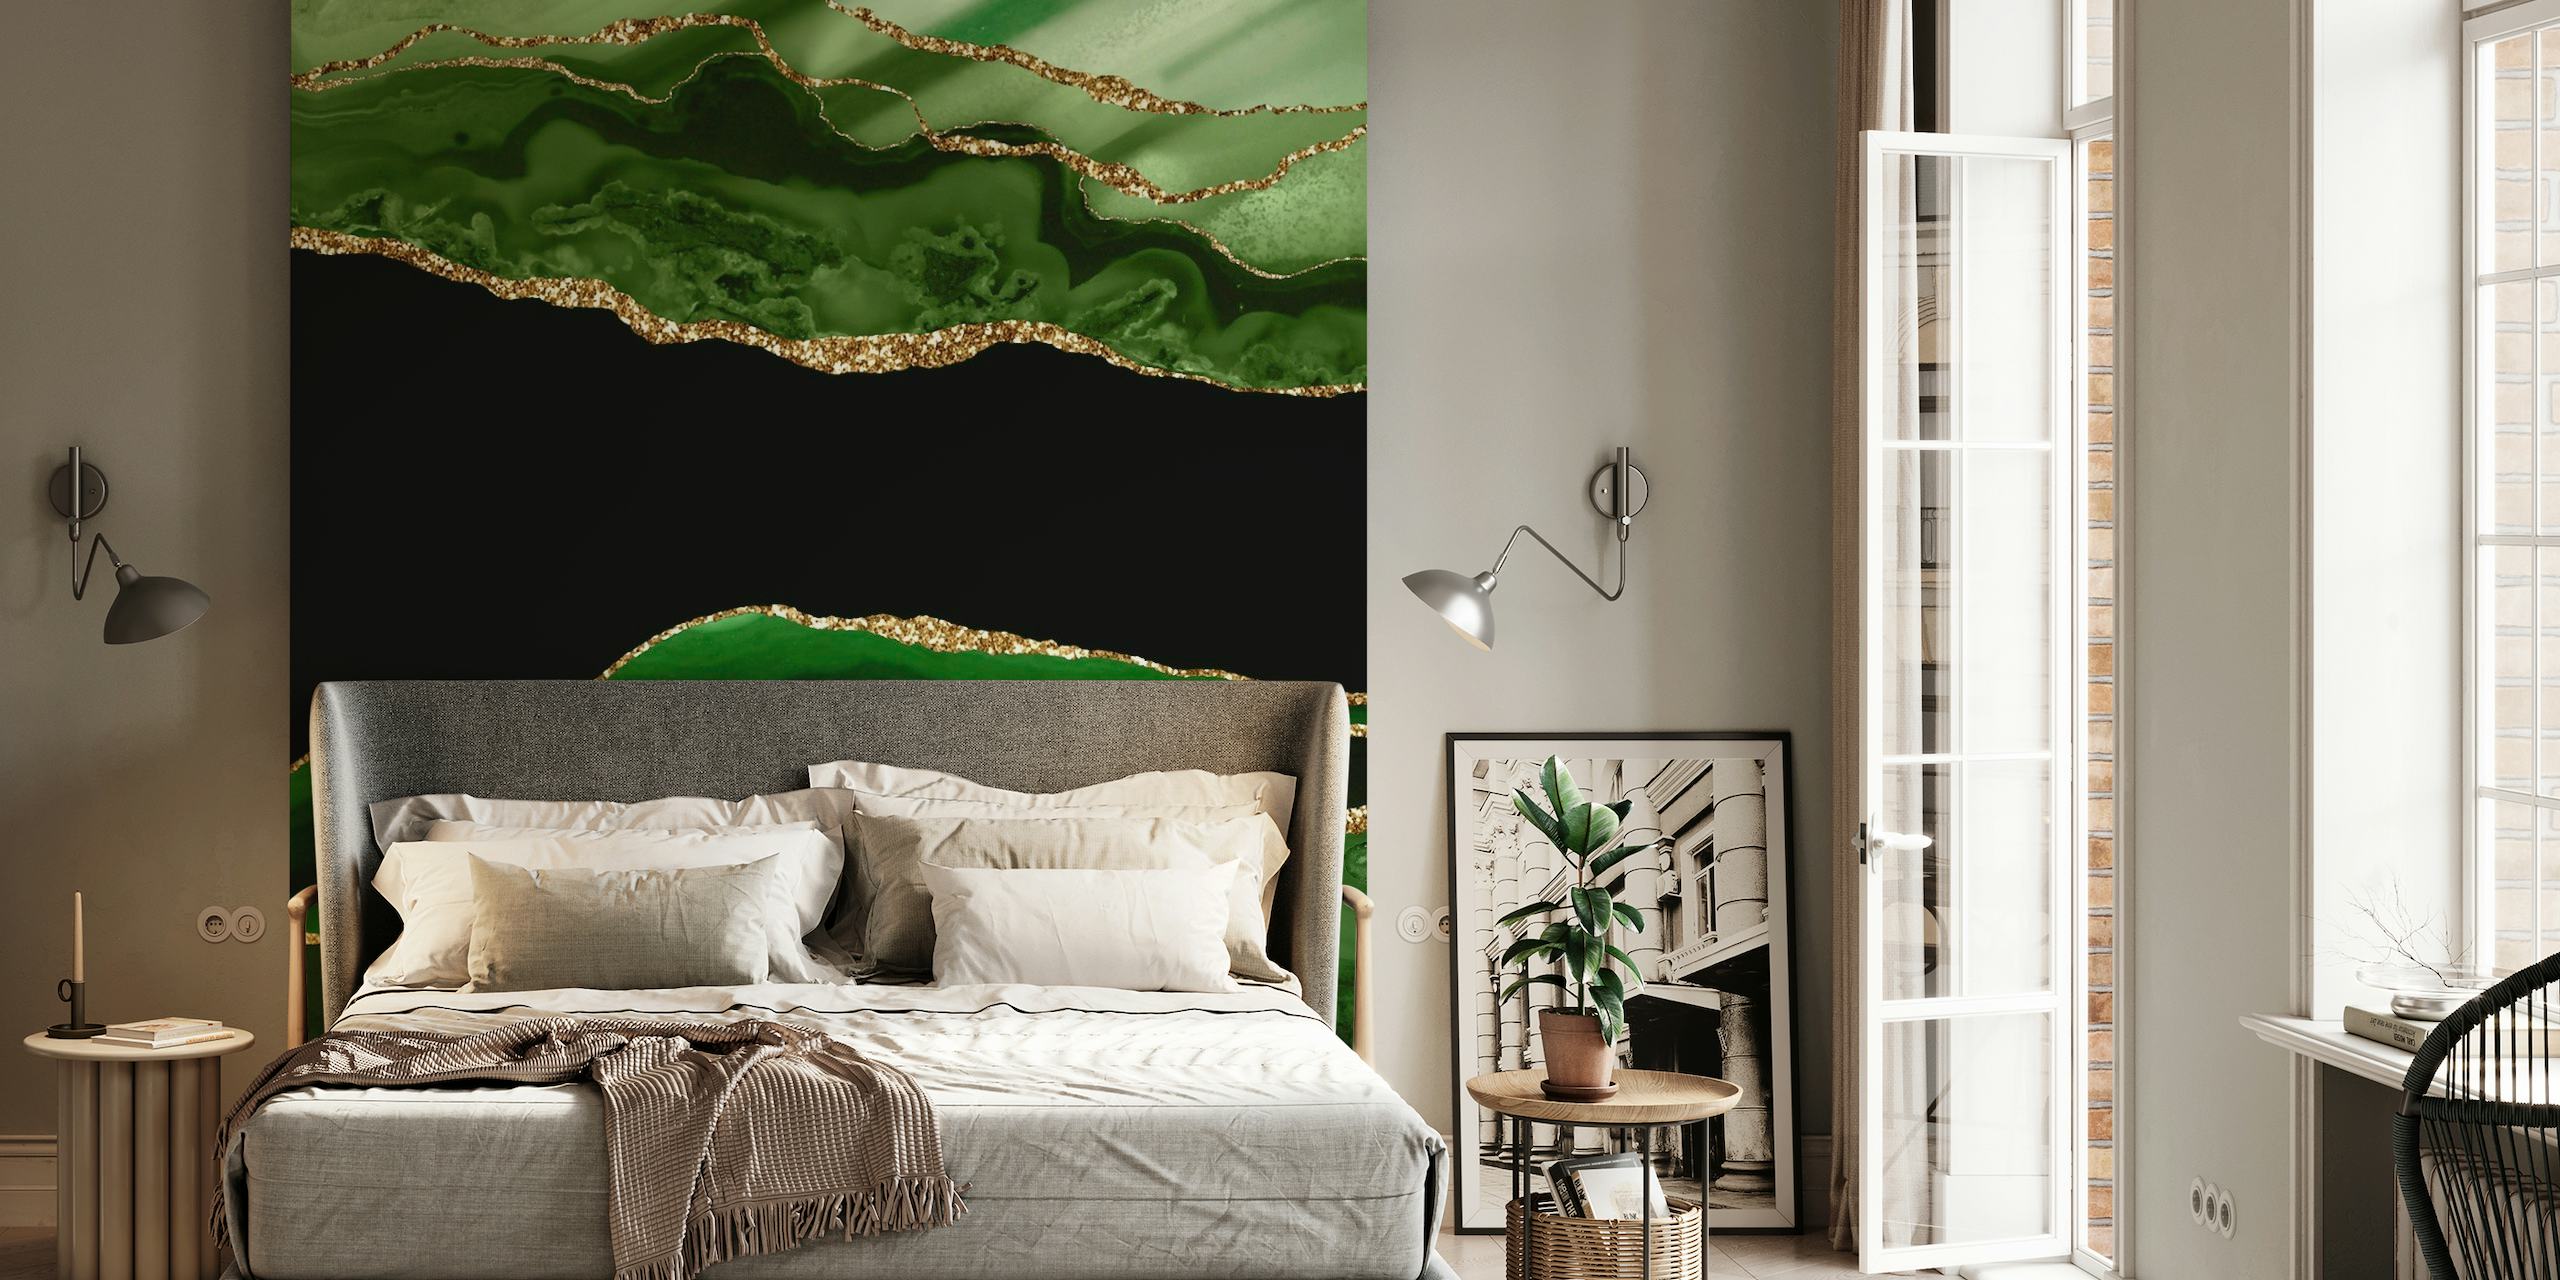 Smaragdgroene zeemeerminmarmeren muurschildering met rijke groene tinten met gouden accenten